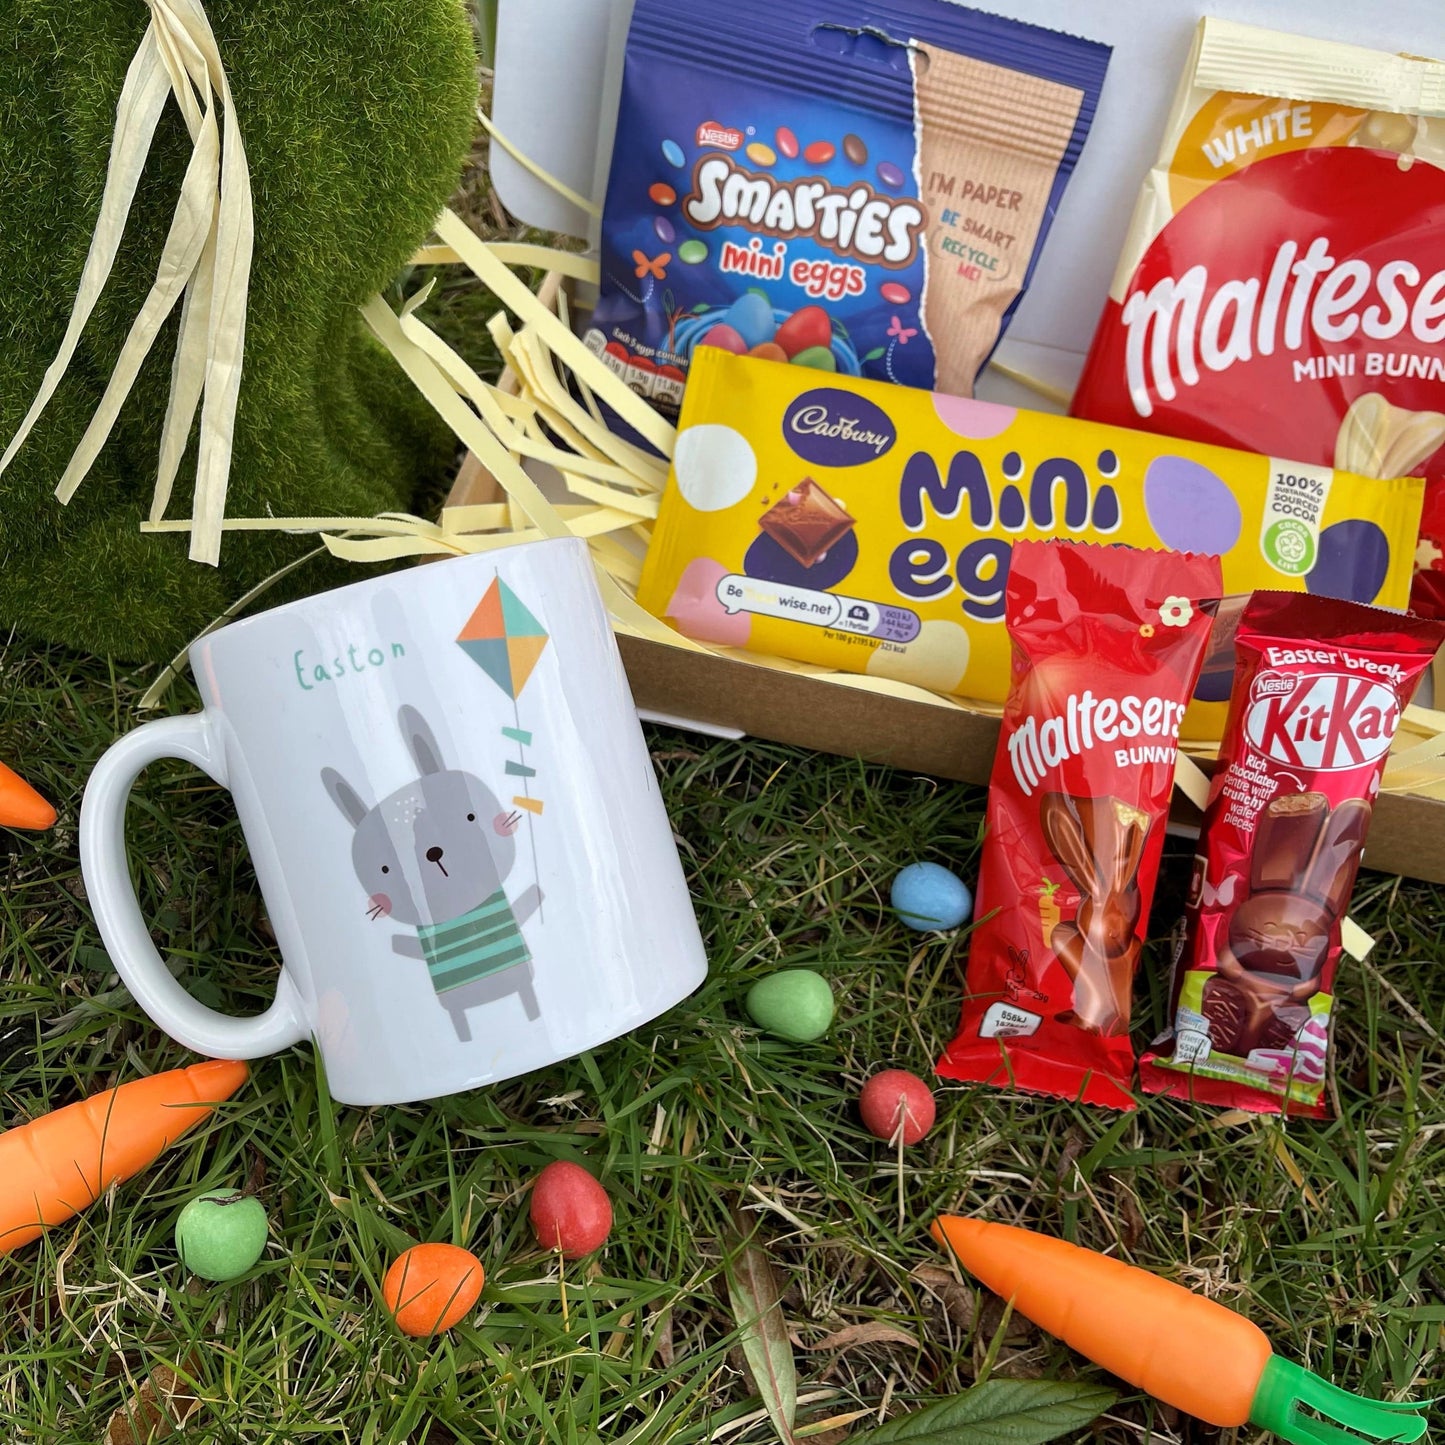 Personalised Easter Kids Gift Mug and Egg Set - Bunny Print